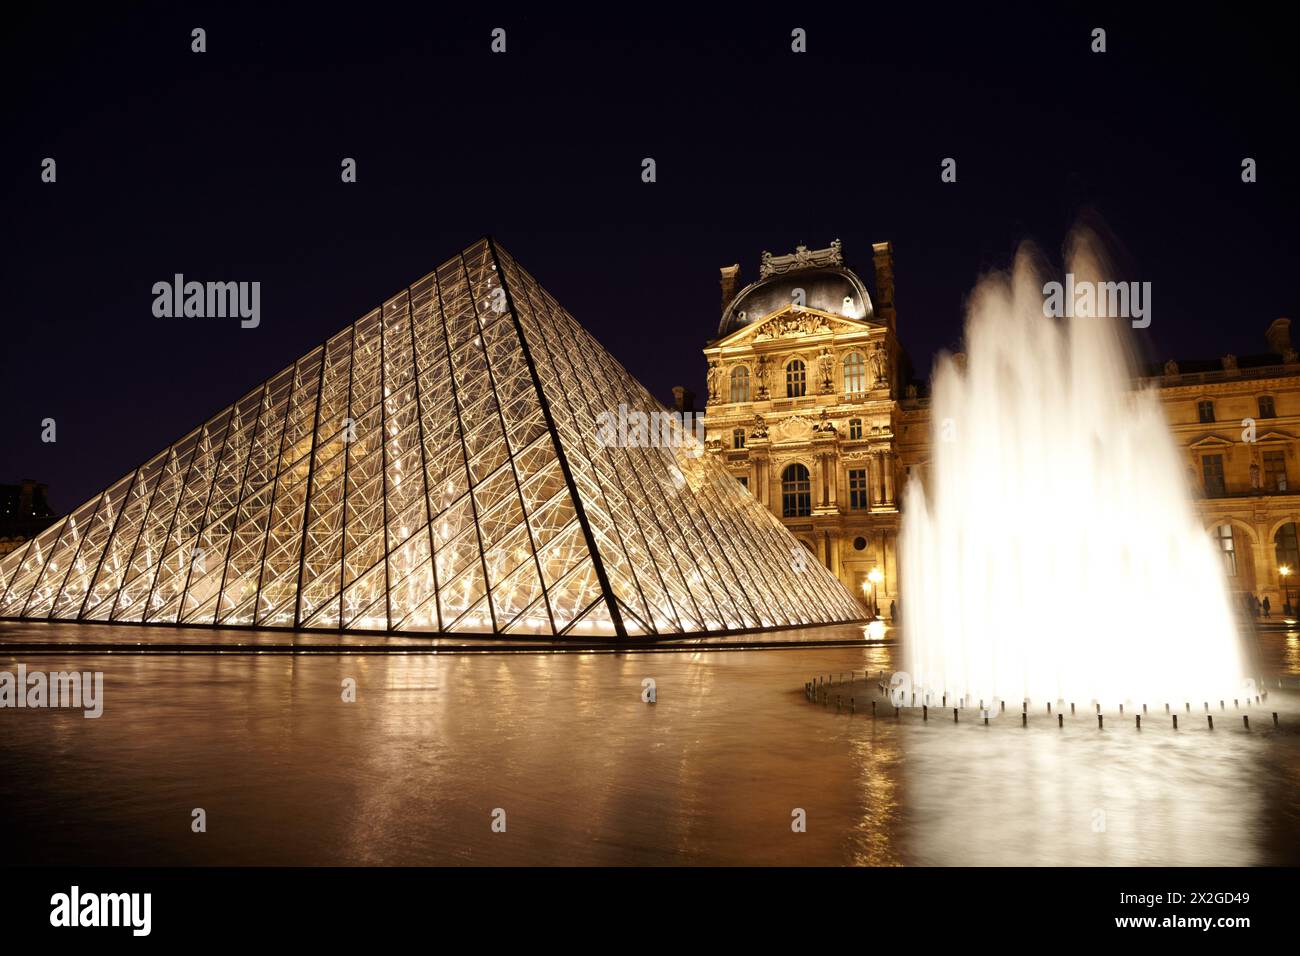 PARIGI - 1° GENNAIO: Piramide del Louvre, fauntain e Pavillon Rishelieu in serata, 1° gennaio 2010, Parigi, Francia. Questa struttura a piramide era des Foto Stock